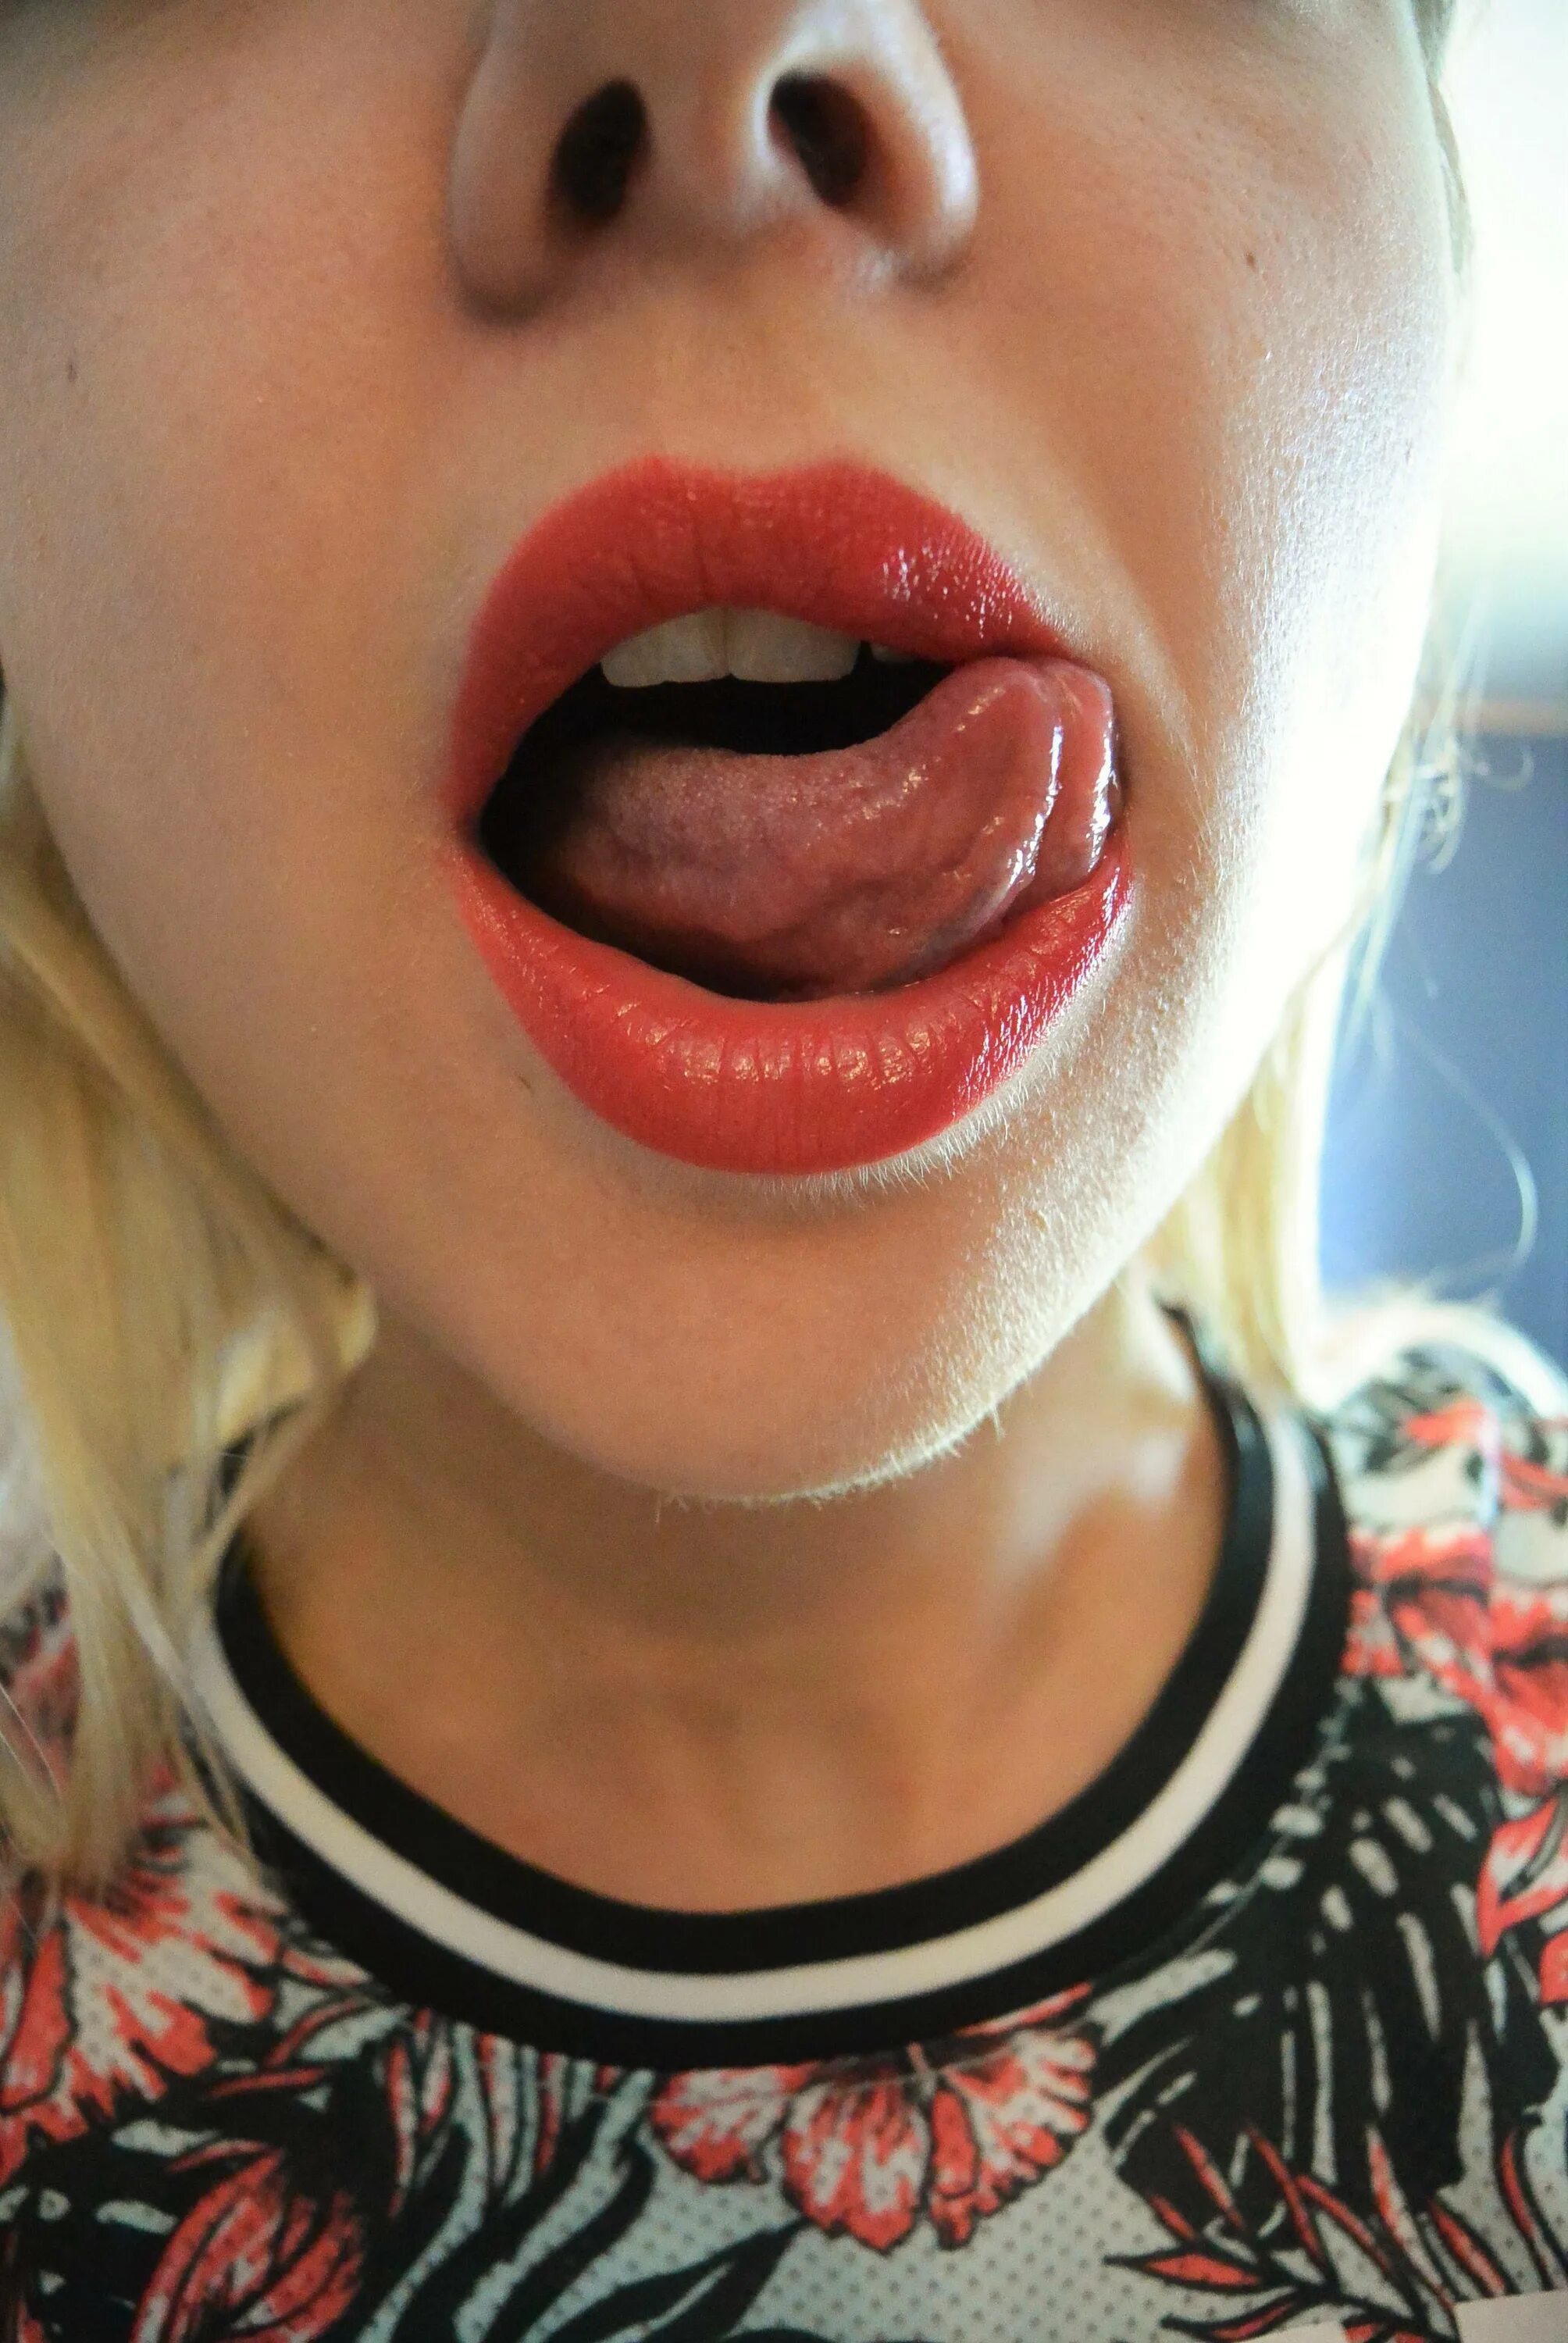 Язык молодой. Женский рот с языком. Женский рот с высунутым языком. Открытый женский рот. Открытый рот девушки домашнее.